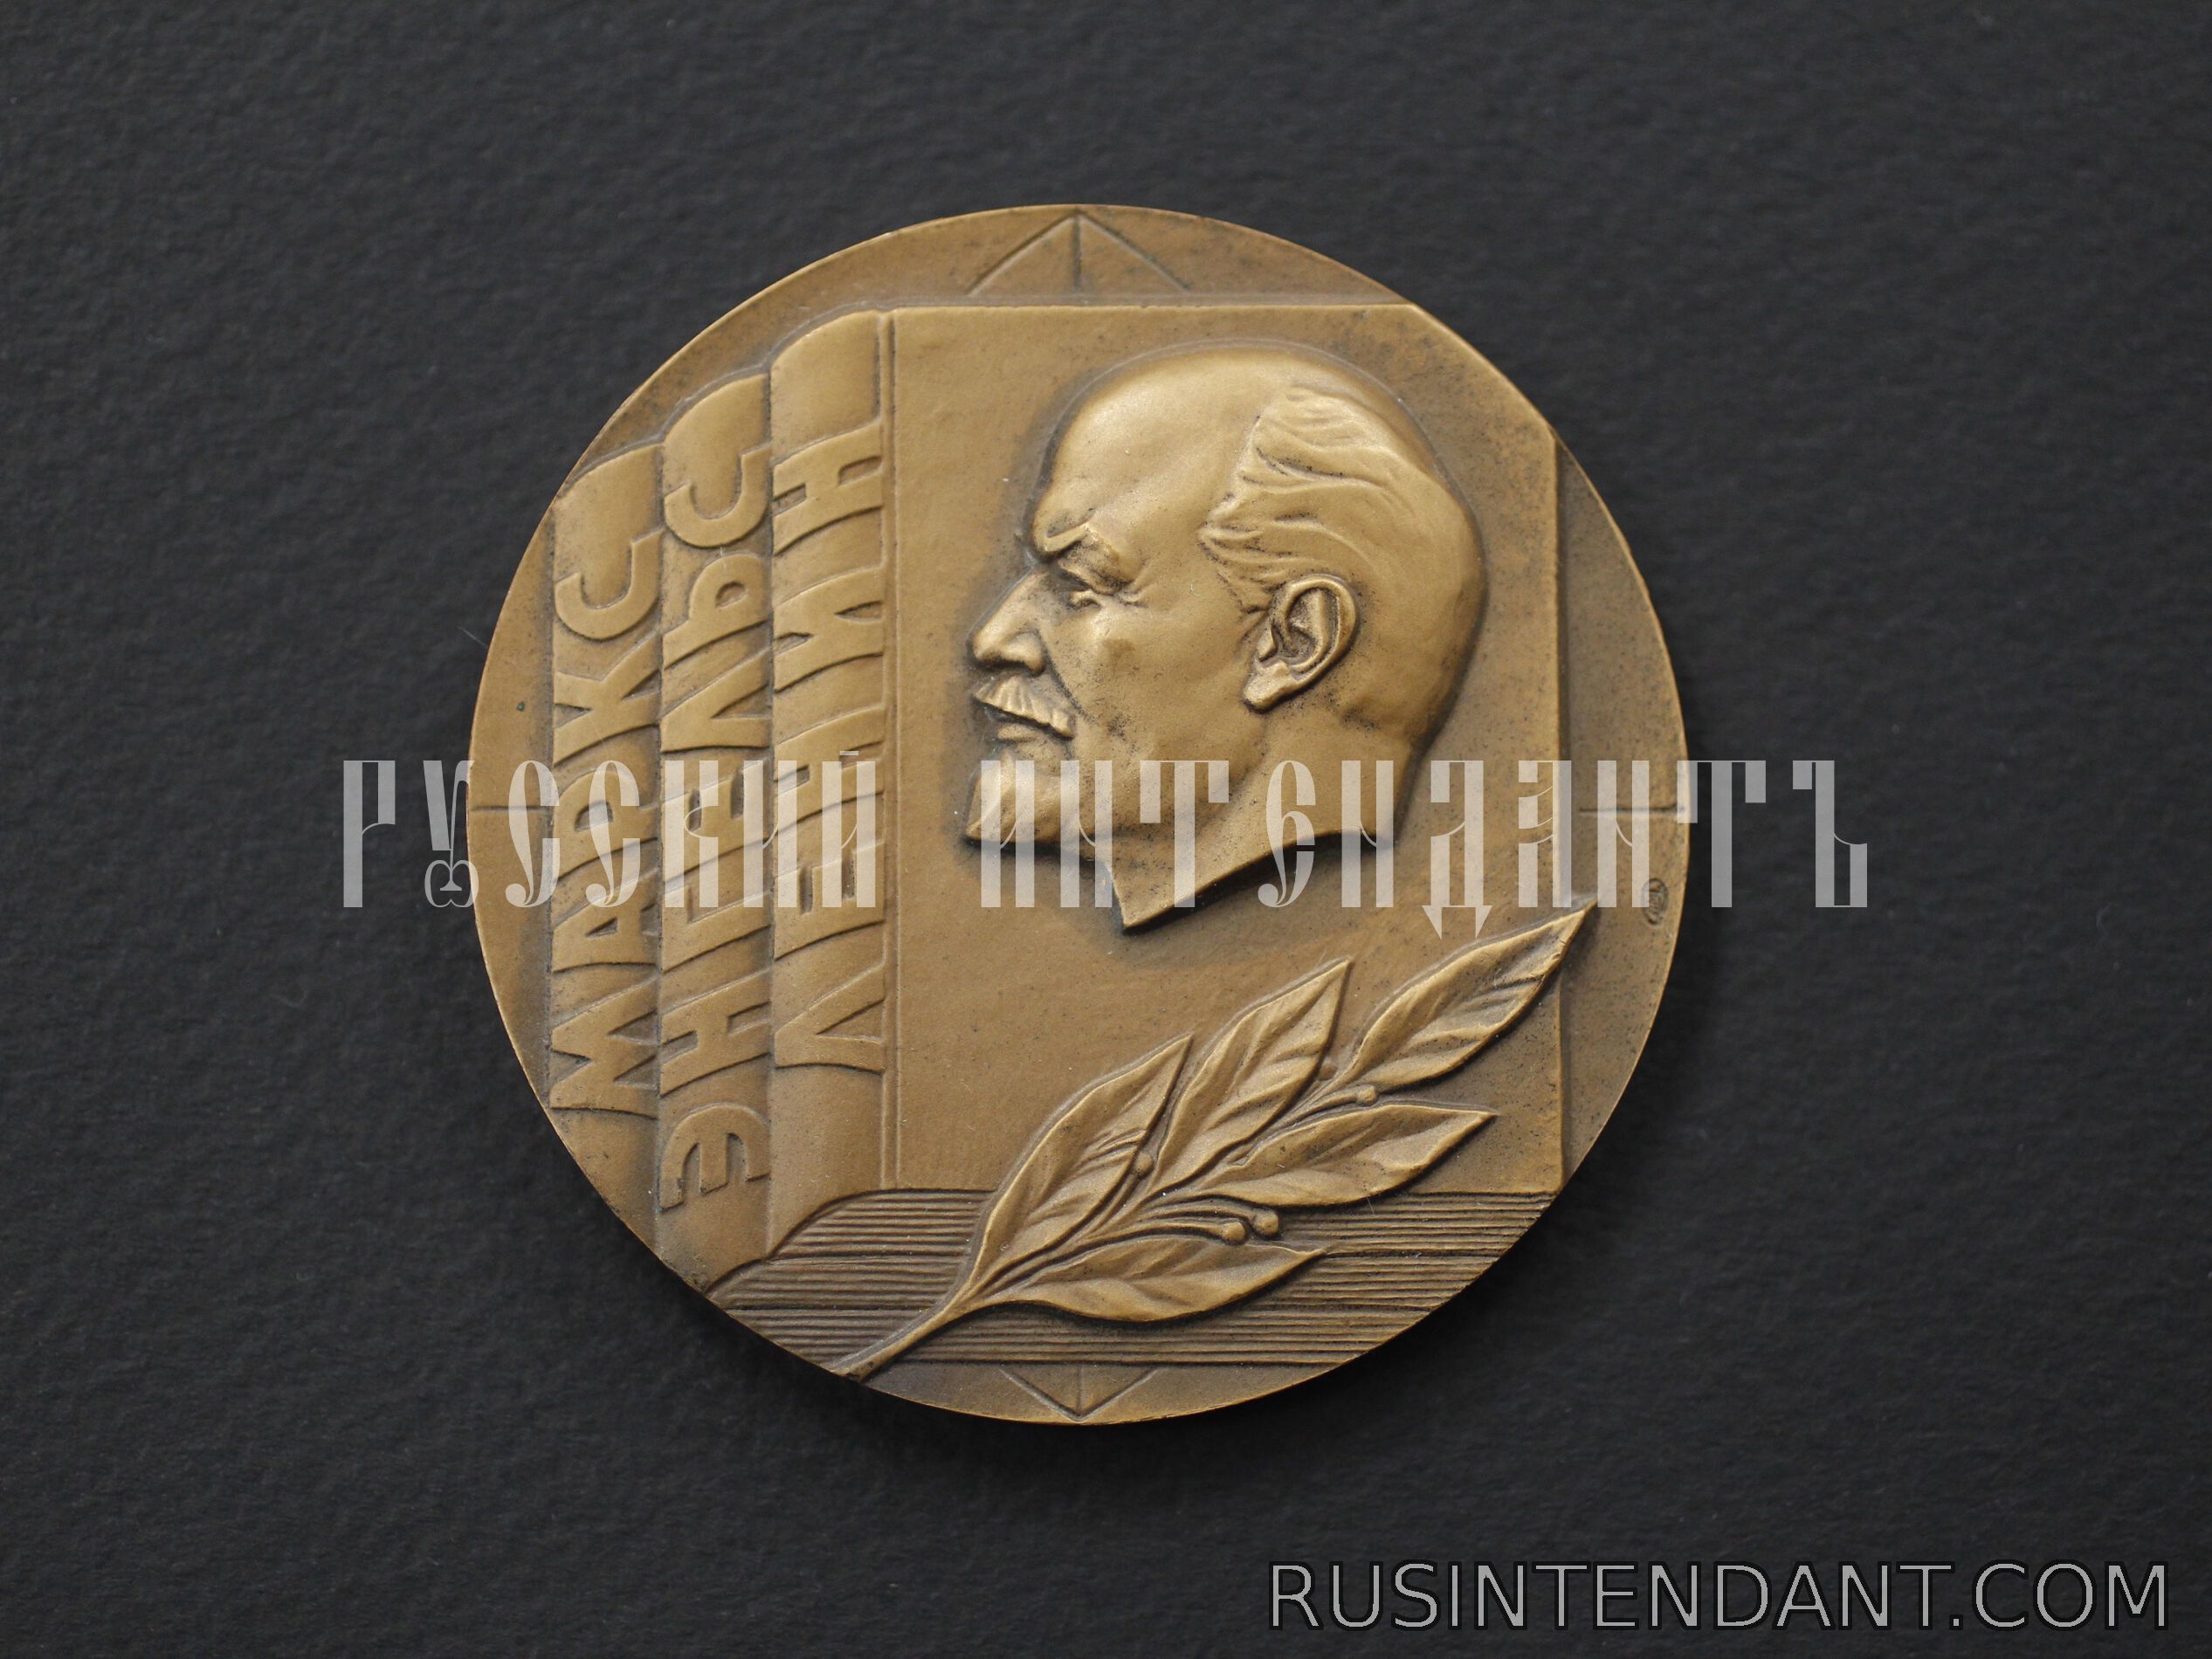 Фото 1: Настольная медаль «За пропаганду Марксизма-Ленинизма и политики КПСС» 